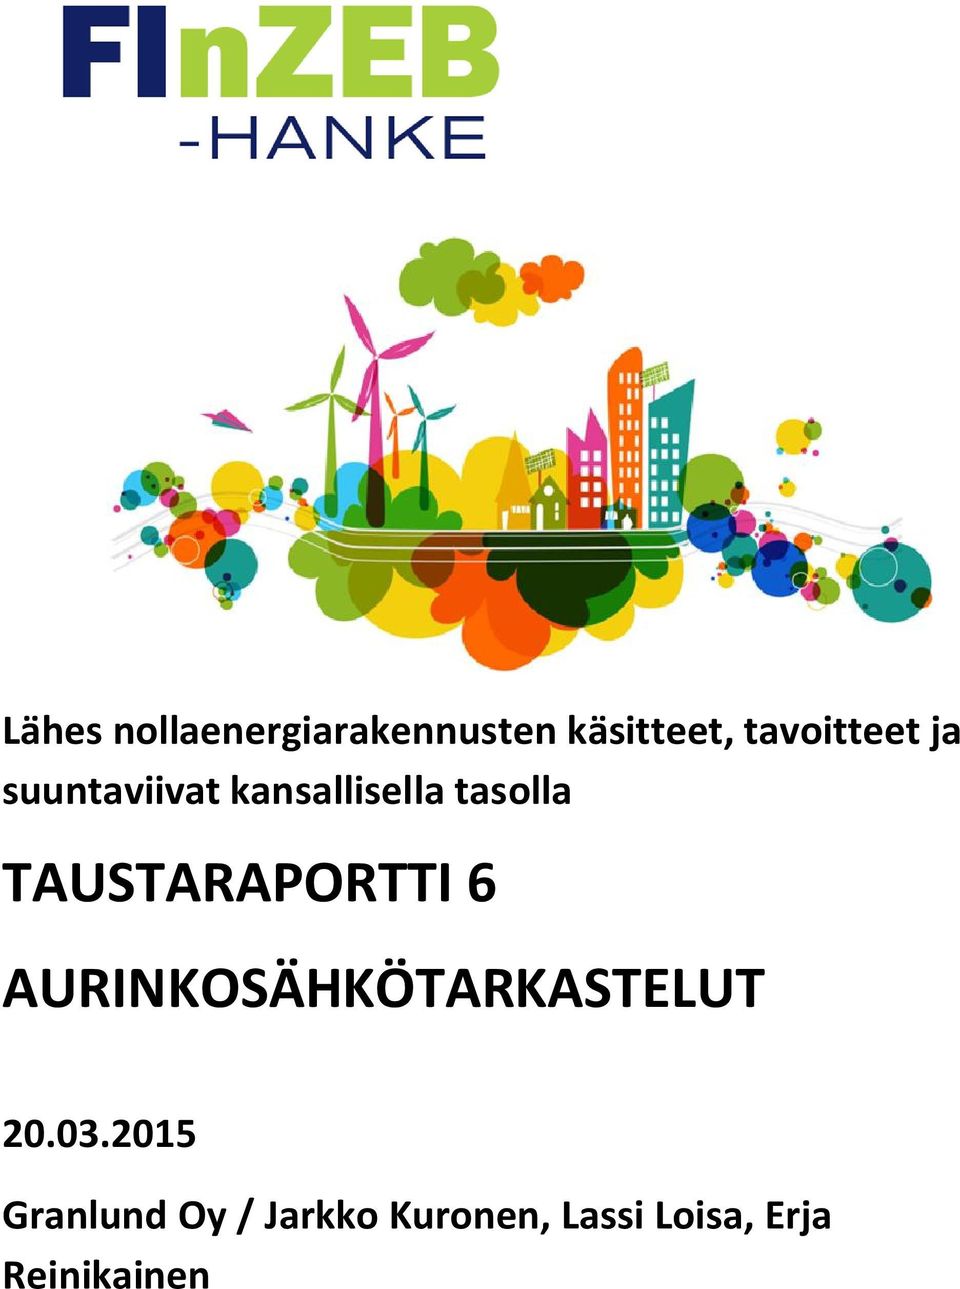 TAUSTARAPORTTI 6 AURINKOSÄHKÖTARKASTELUT 20.03.